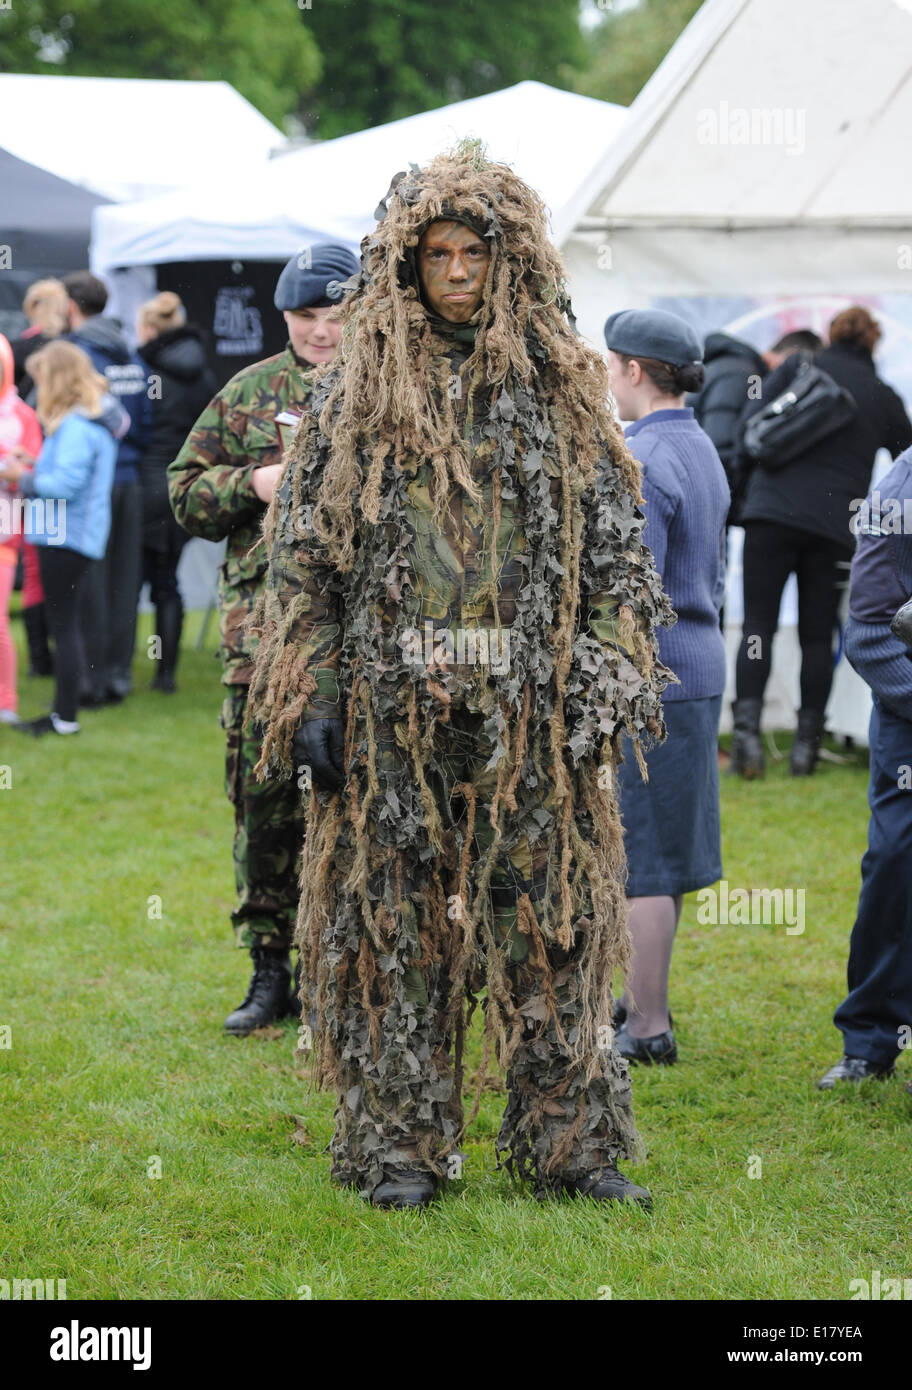 Hove Brighton UK 26 mai 2014 - Ce cadet est habillé pour la météo à Hove Carnival aujourd'hui que la pluie et le mauvais temps ont balayé le sud sur la Banque peut lundi férié Banque D'Images